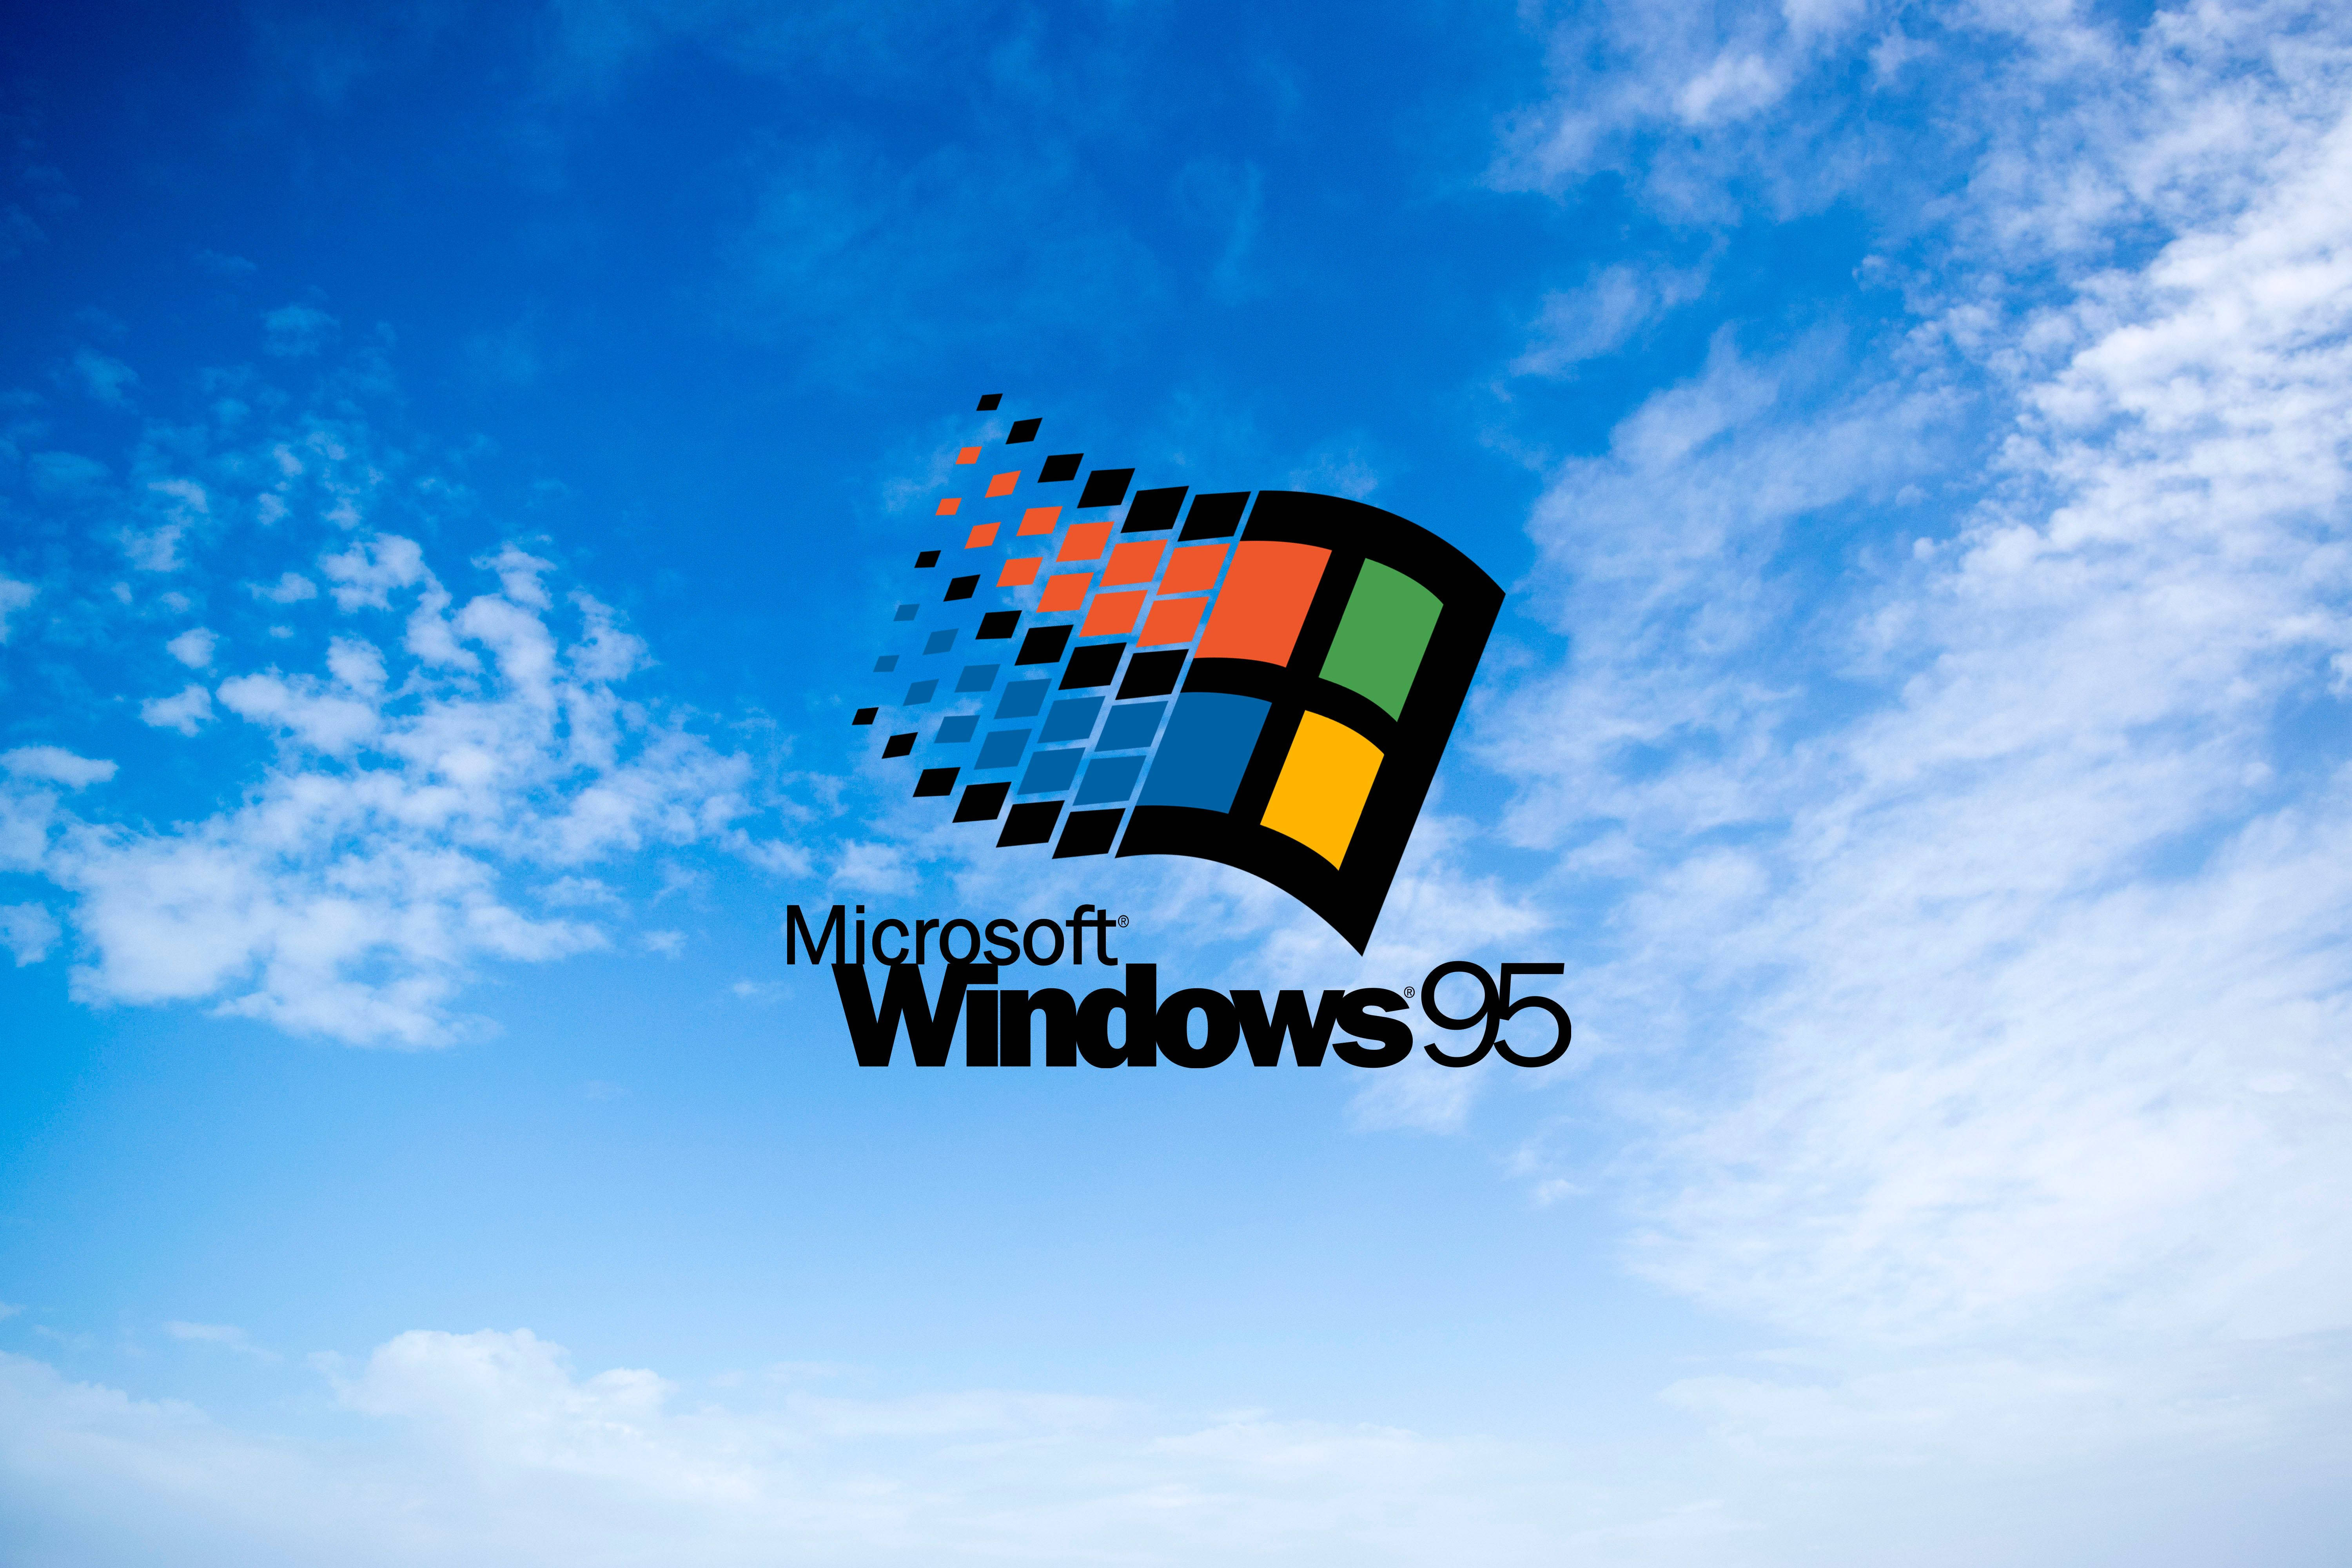 Tải hình nền Windows 95 và cùng trải nghiệm những hình nền đẹp và mới lạ. Với các bức ảnh chất lượng cao này, bạn sẽ có được trải nghiệm độc đáo của hệ điều hành Windows